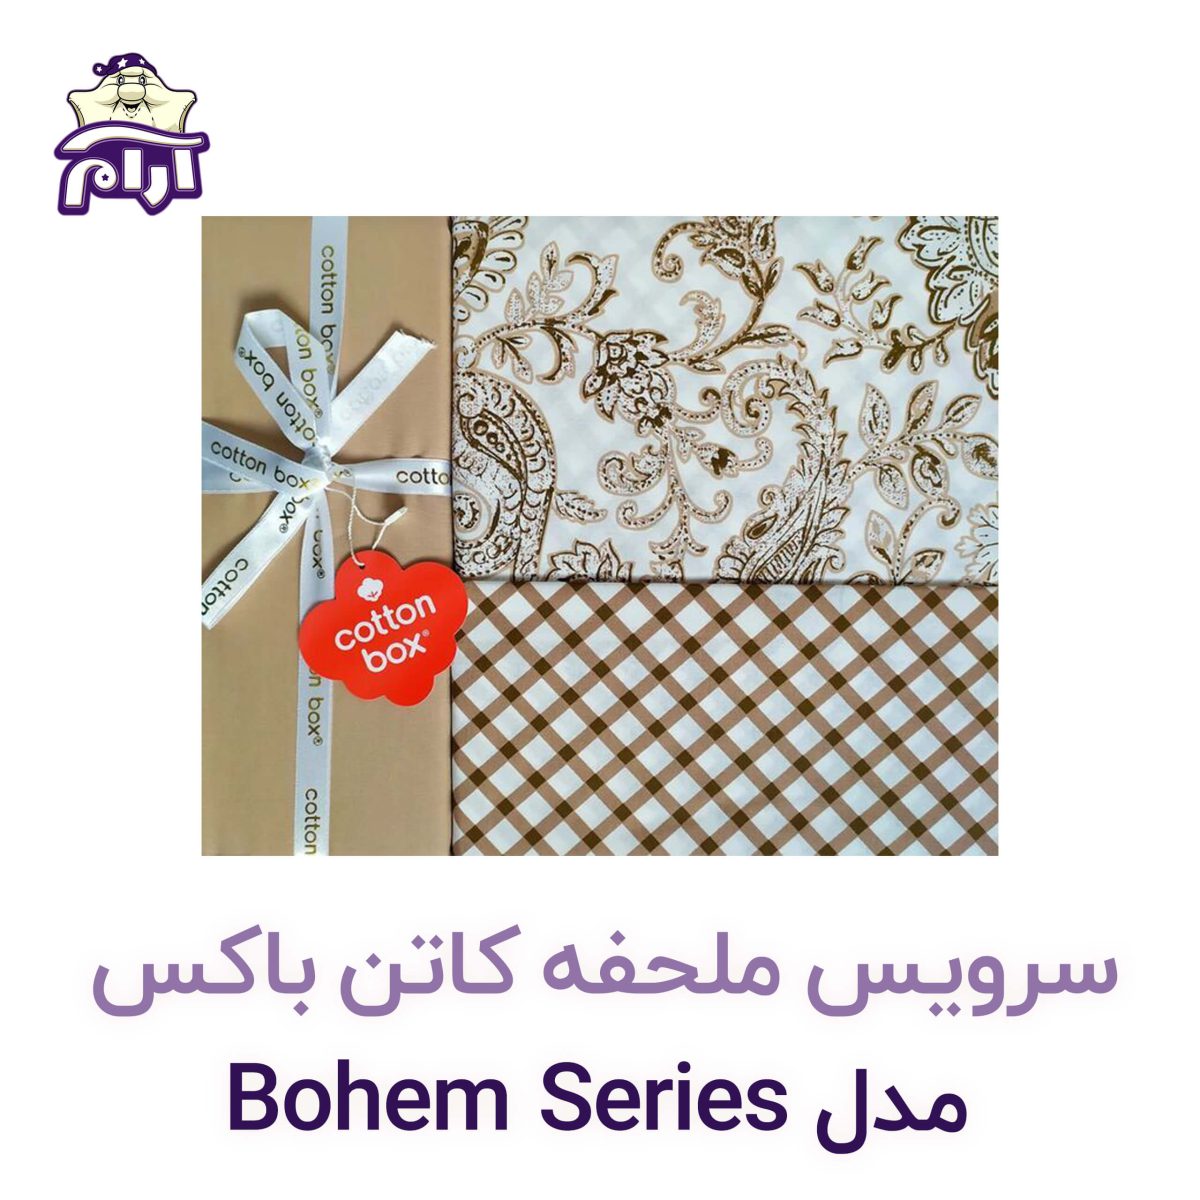 سرویس ملحفه کاتن باکس مدل Bohem Series TAMARA یکنفره 3 تکه